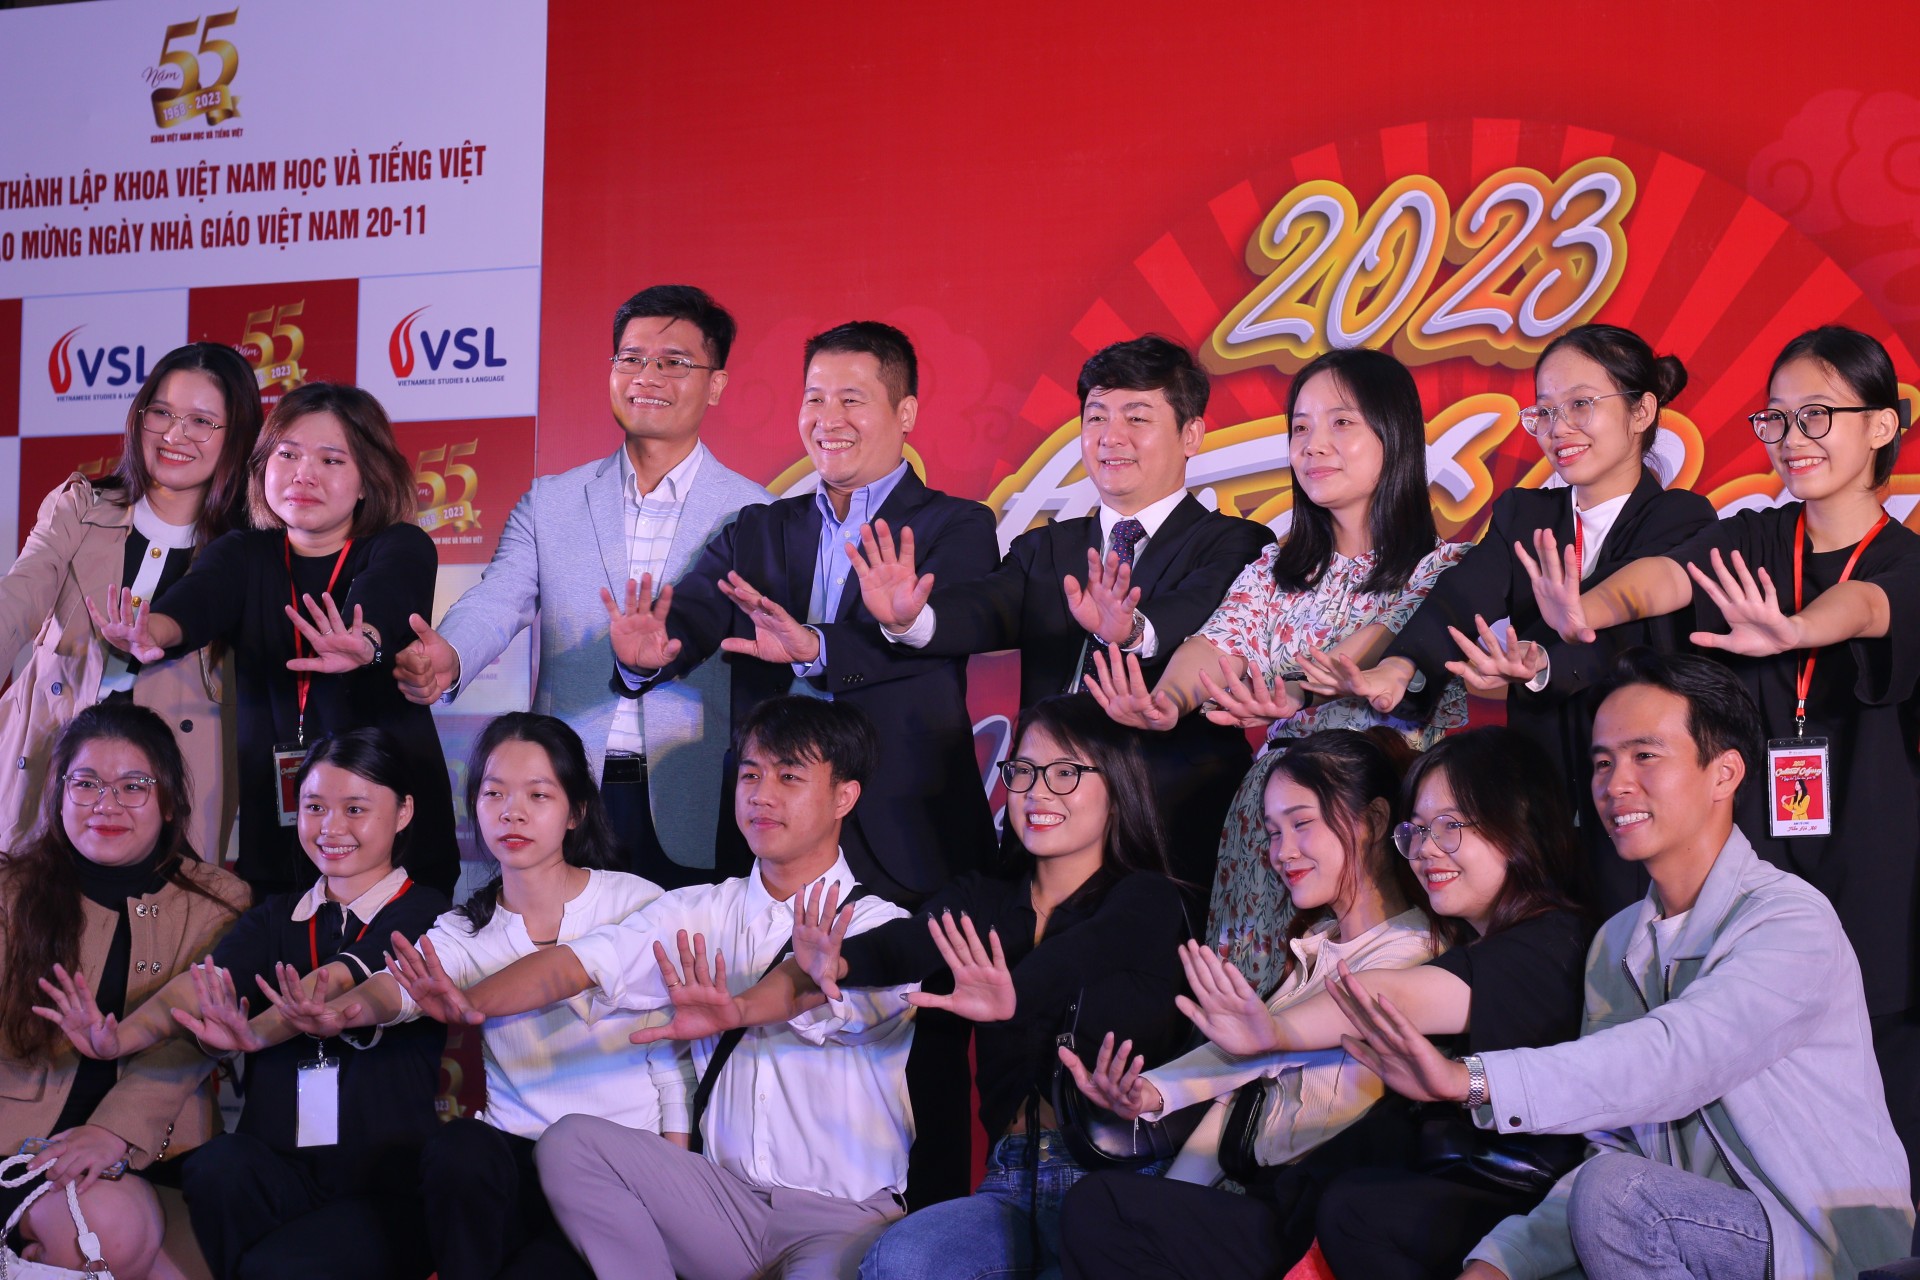 Ngày hội Văn hoá quốc tế năm 2023: Khám phá không gian đa văn hoá tại Khoa Việt Nam học và tiếng Việt